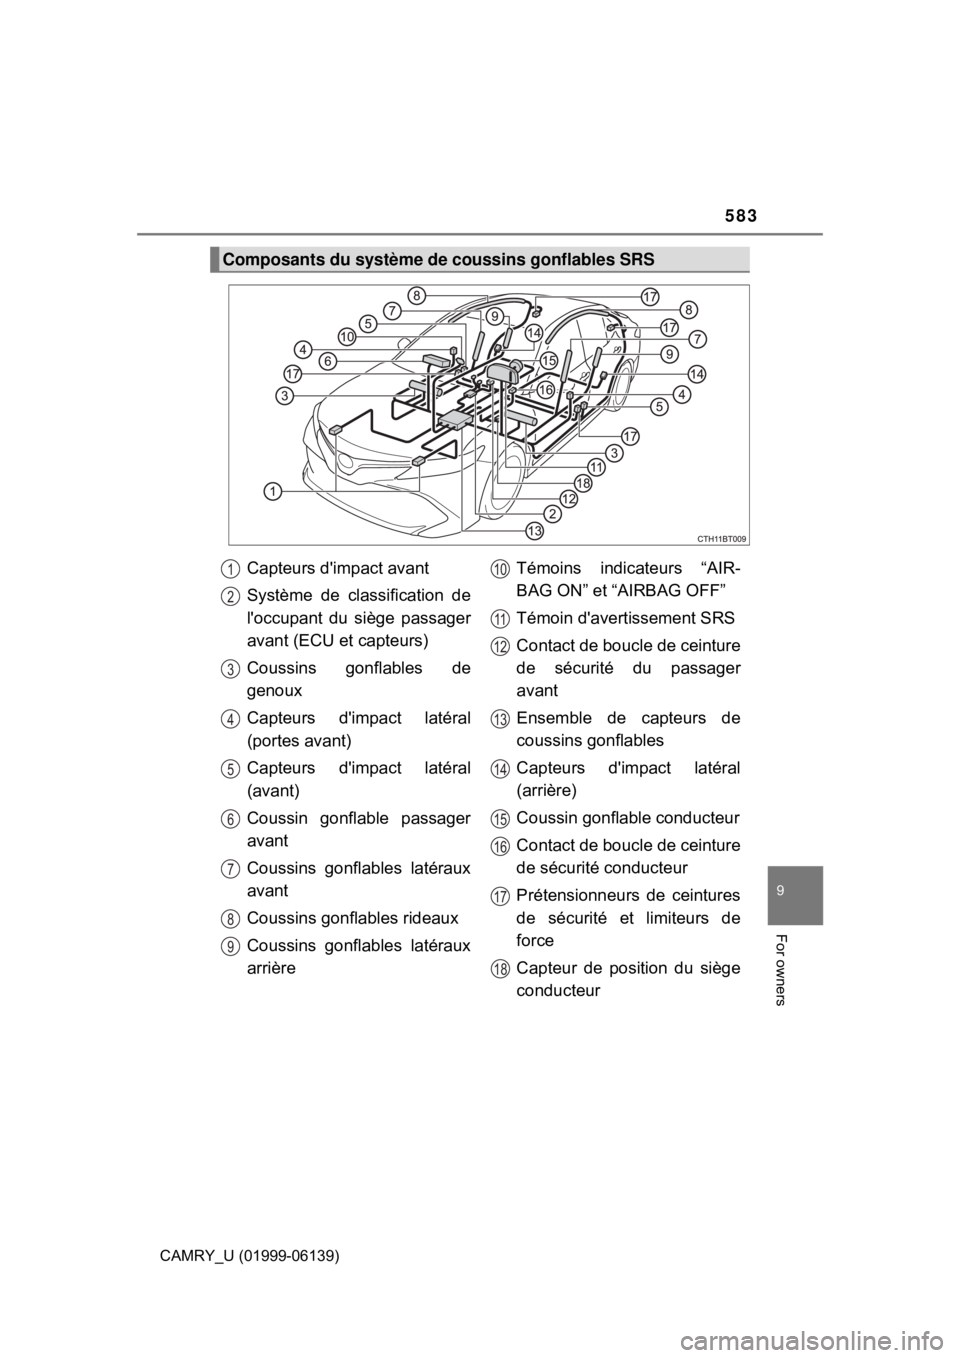 TOYOTA CAMRY 2018  Owners Manual (in English) 583
9
For owners
CAMRY_U (01999-06139)
Composants du système de coussins gonflables SRS
Capteurs dimpact avant
Système de classification de
loccupant du siège passager
avant (ECU et capteurs)
Cou